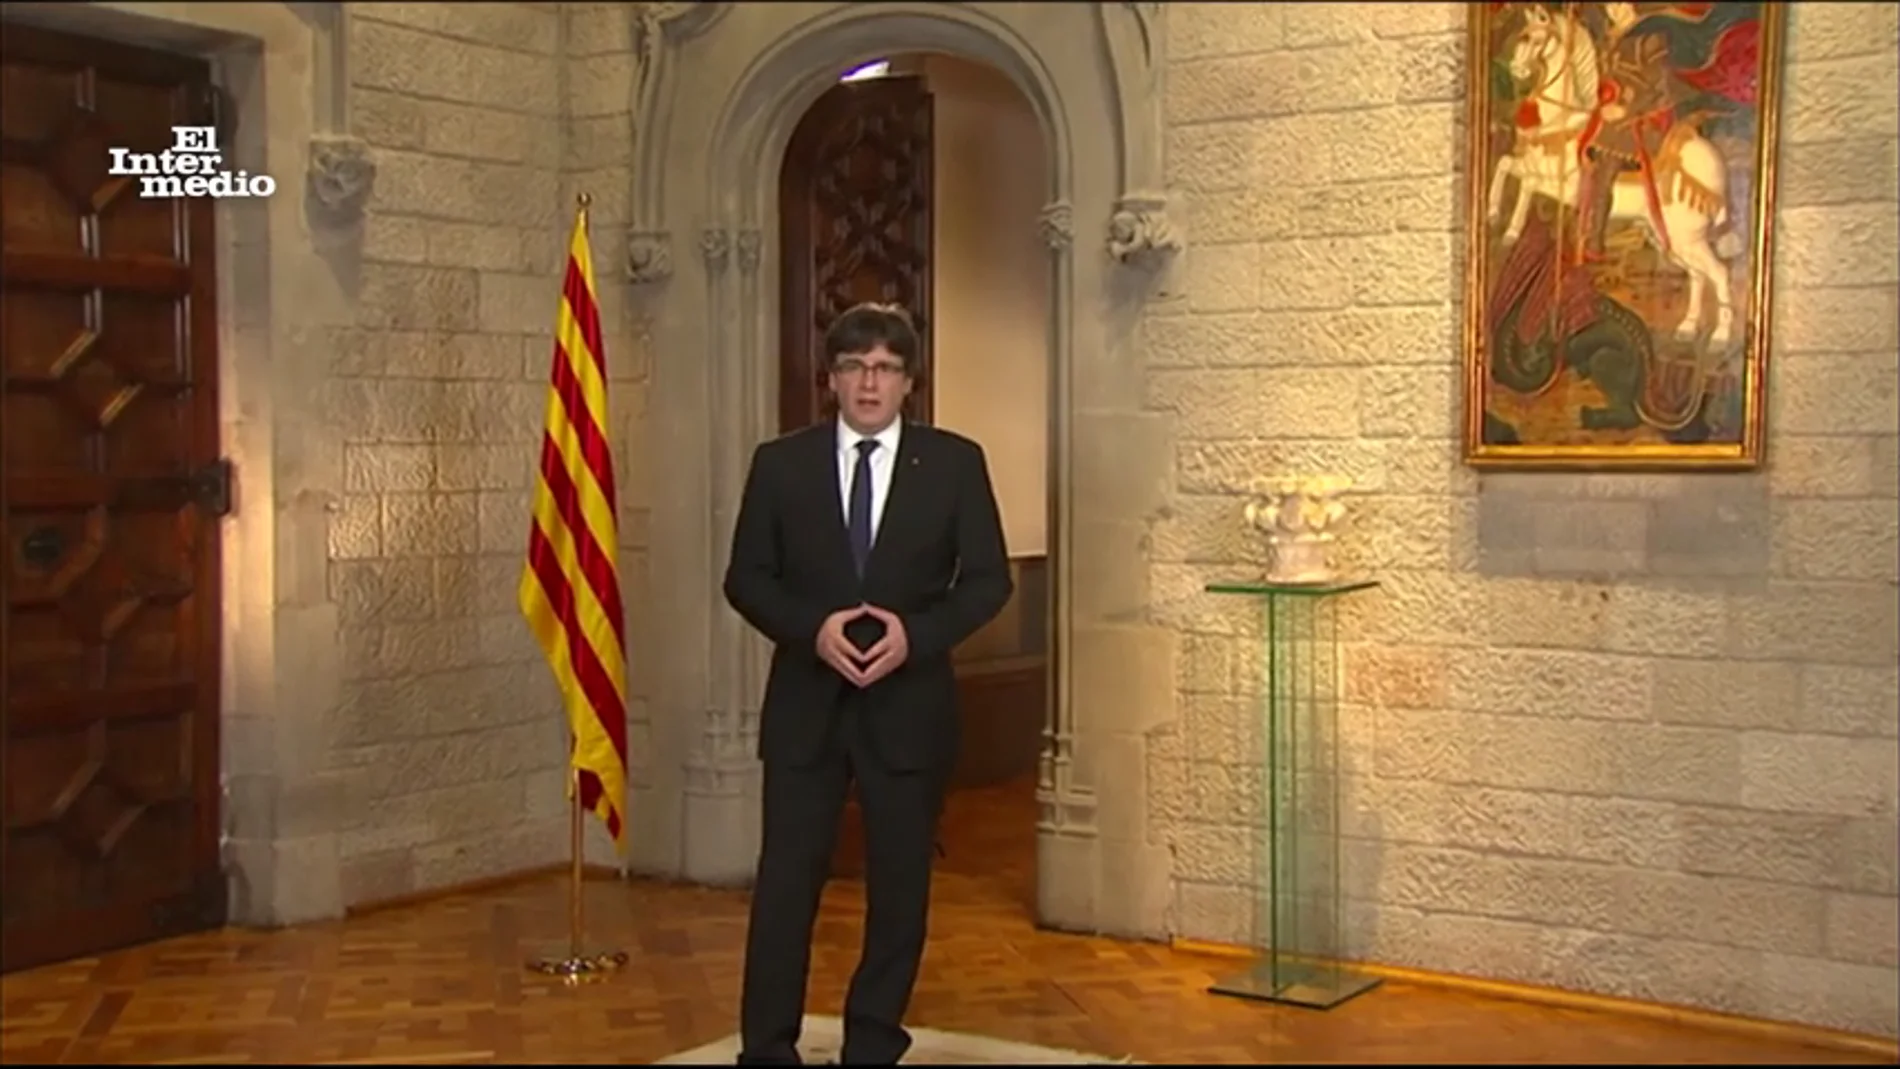 Carles Puigdemont pide perdón como el rey Juan Carlos: "Lo siento mucho, me he equivocado y no volverá a ocurrir"